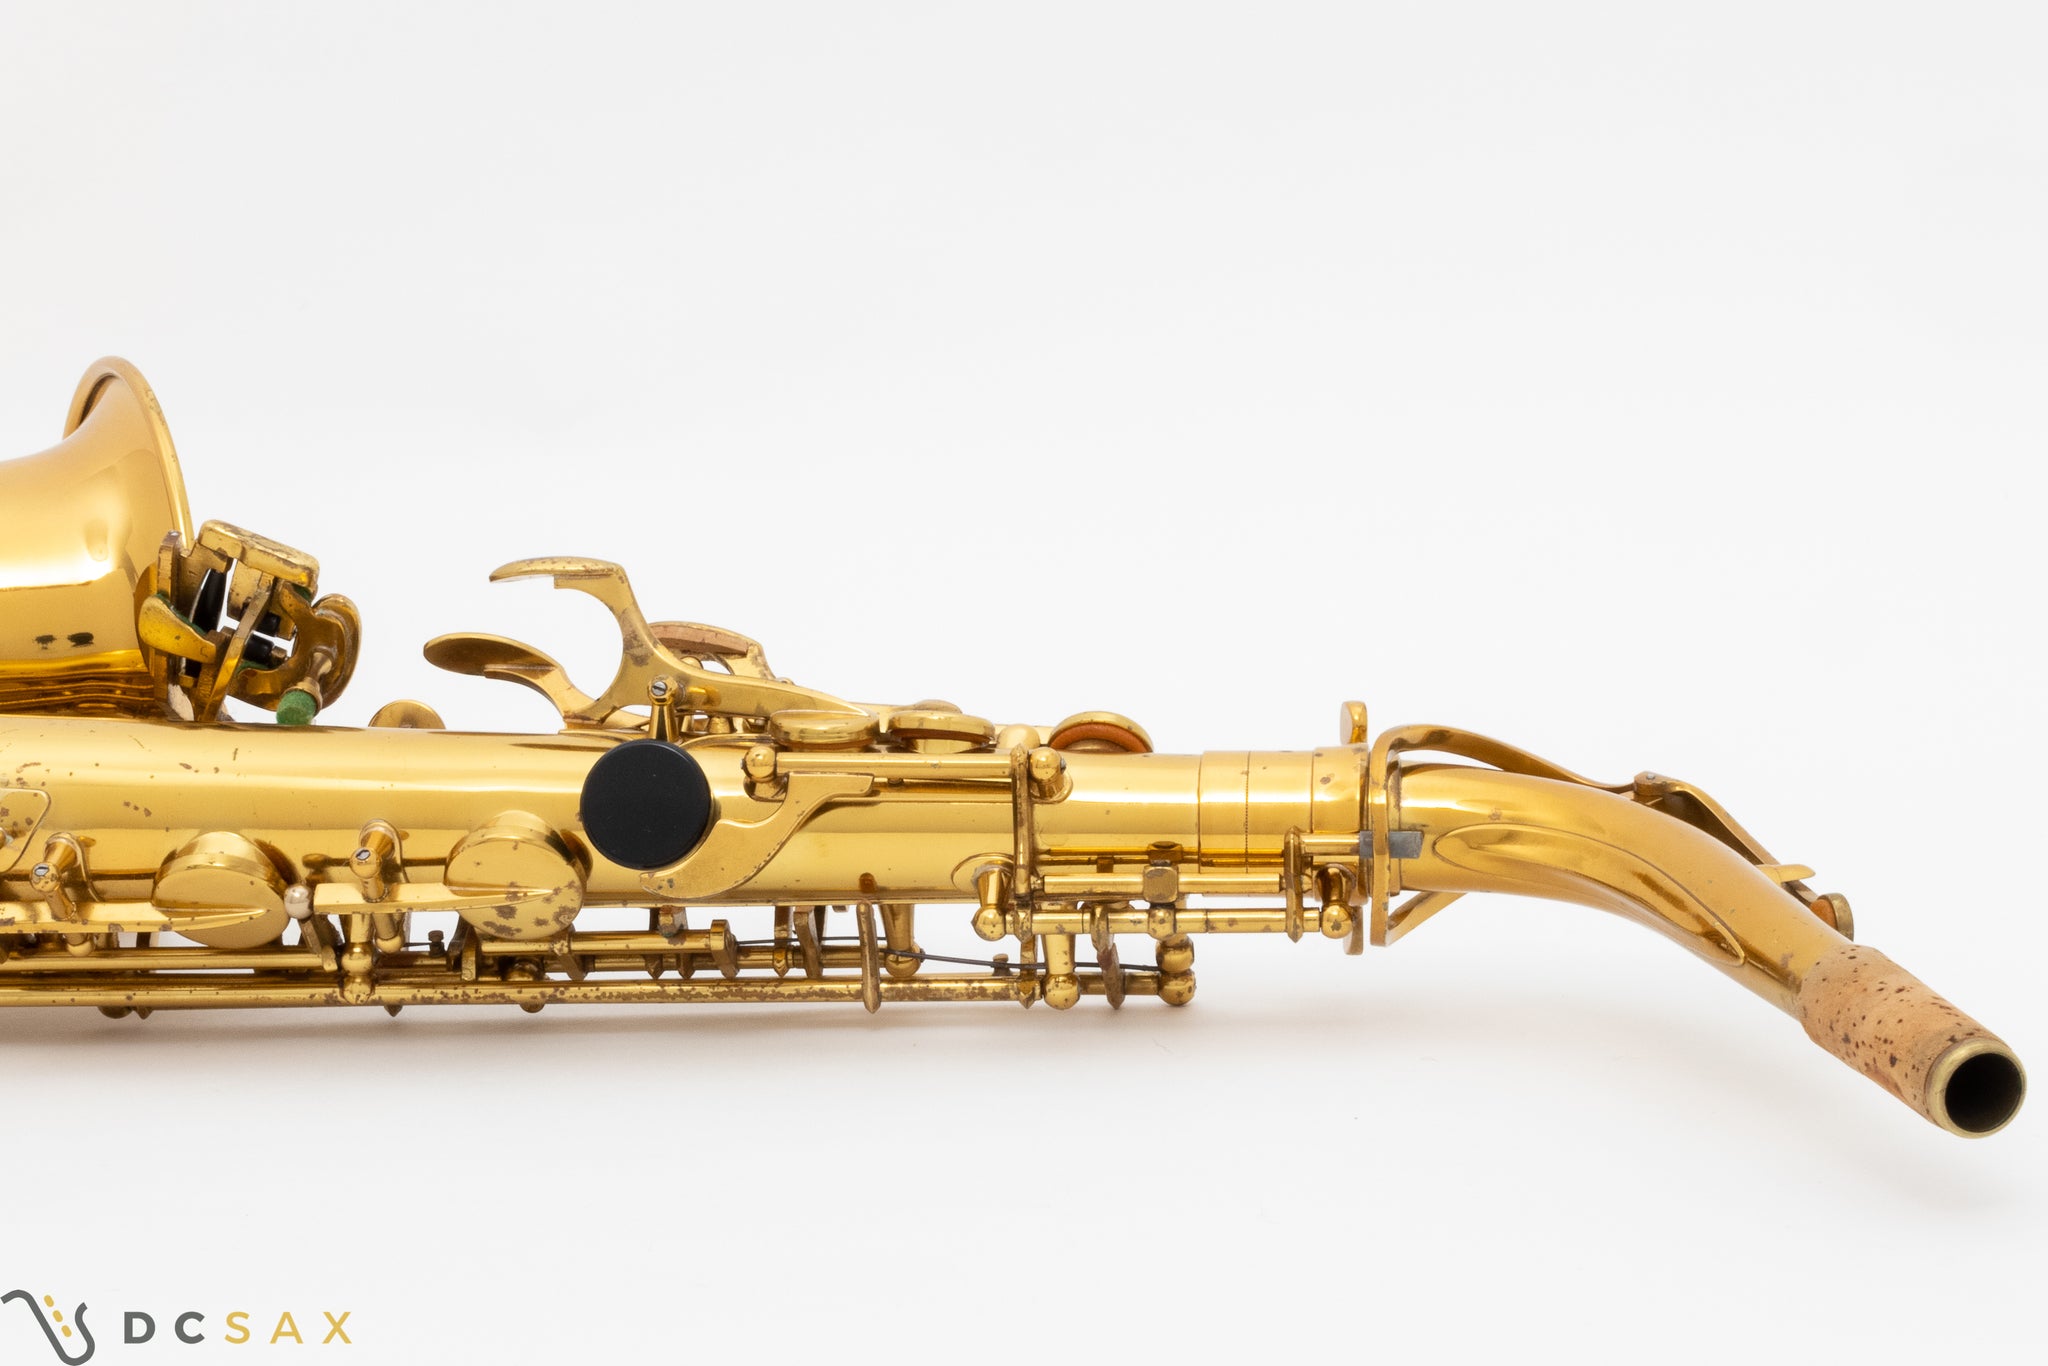 Selmer Mark VI Alto Saxophone, 98% Original Lacquer, Just Serviced, Video